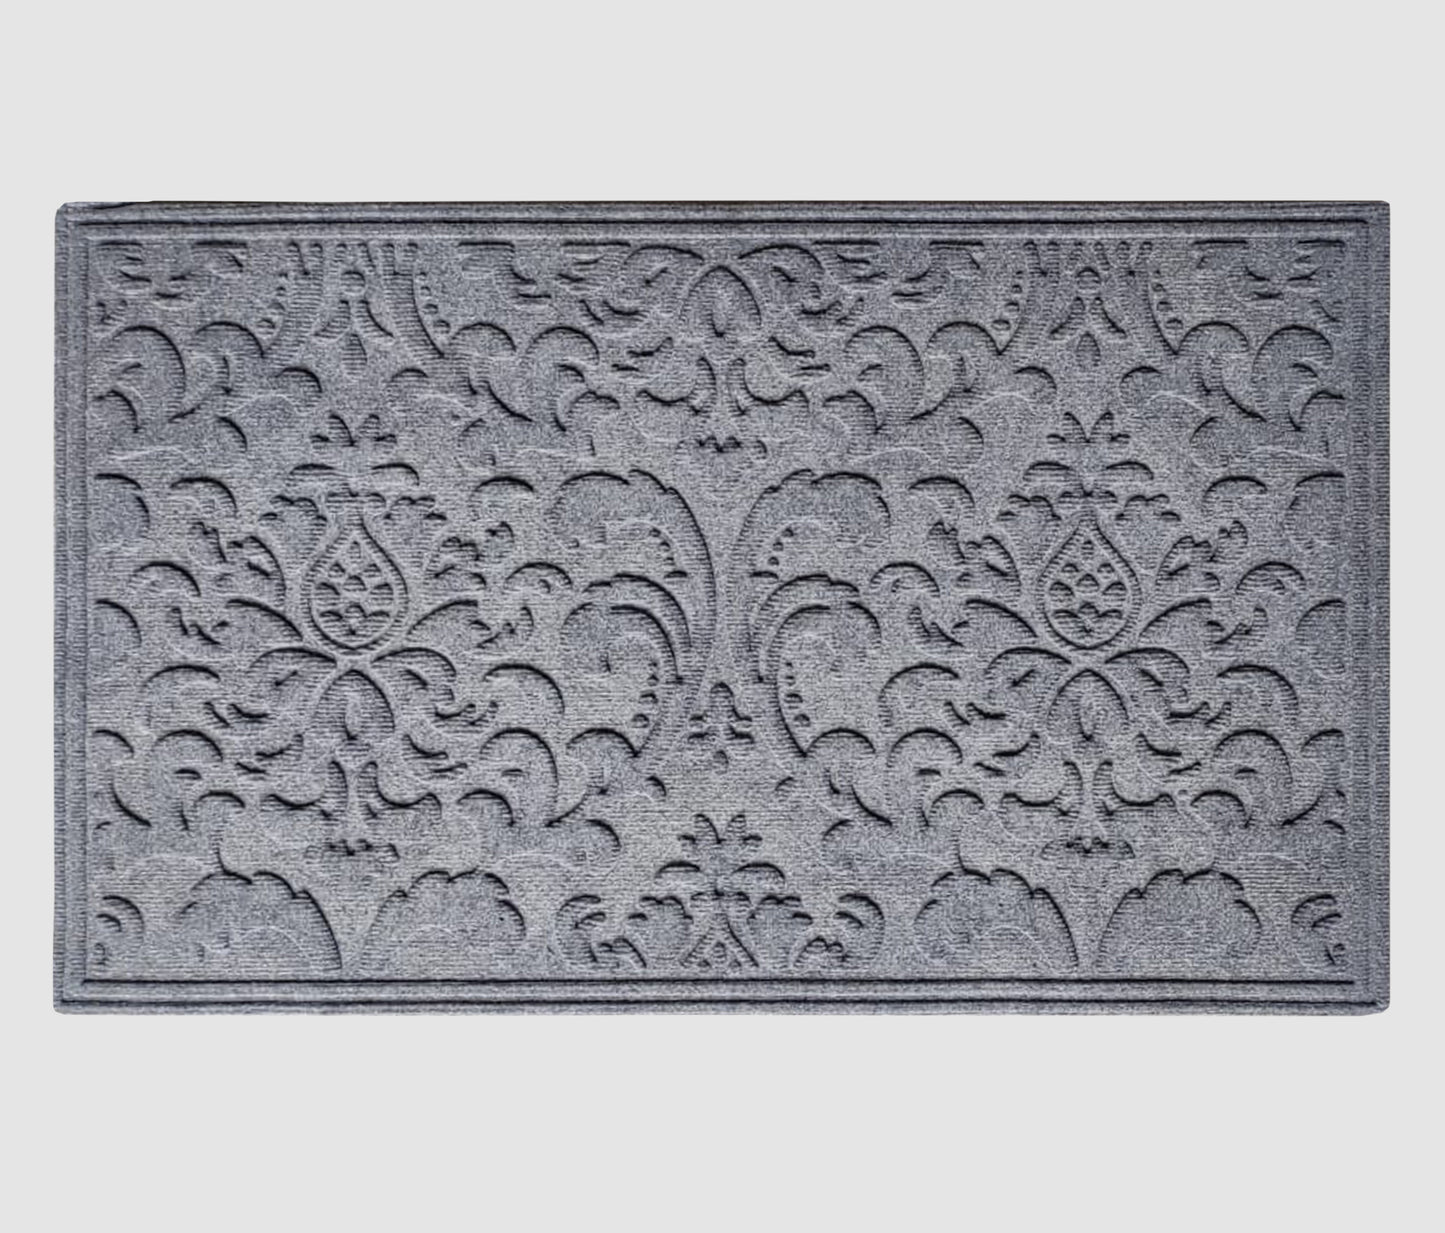 A1HC New Original All Weather Superior Dirt Polypropylene Doormat